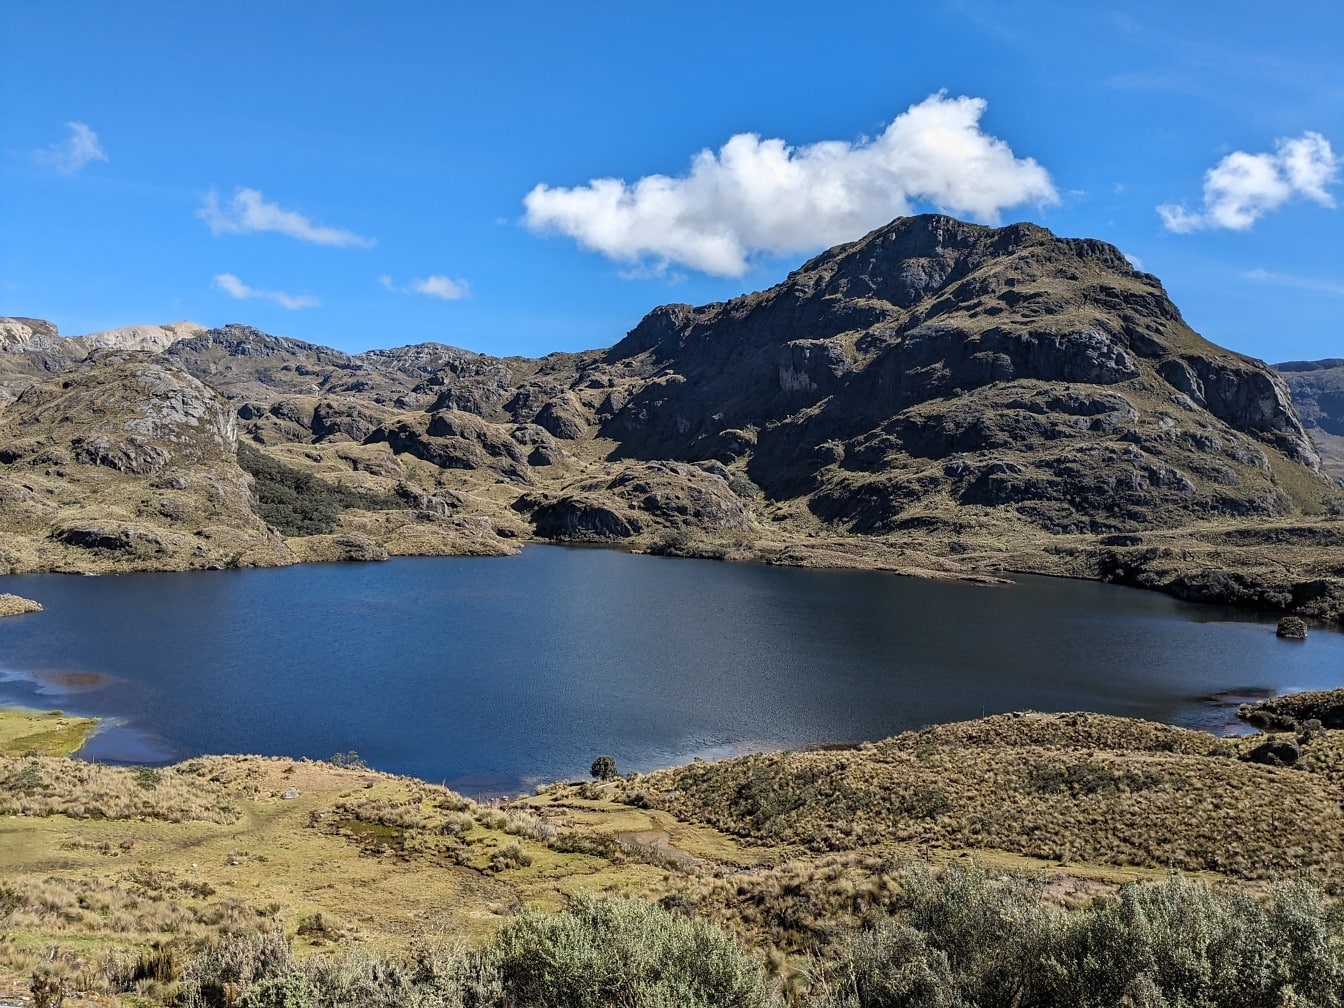 라구나 토레아도라(Laguna Toreadora)는 에콰도르의 카하스(Cajas) 자연 공원에 있는 산의 고원에 있는 고지대 호수입니다